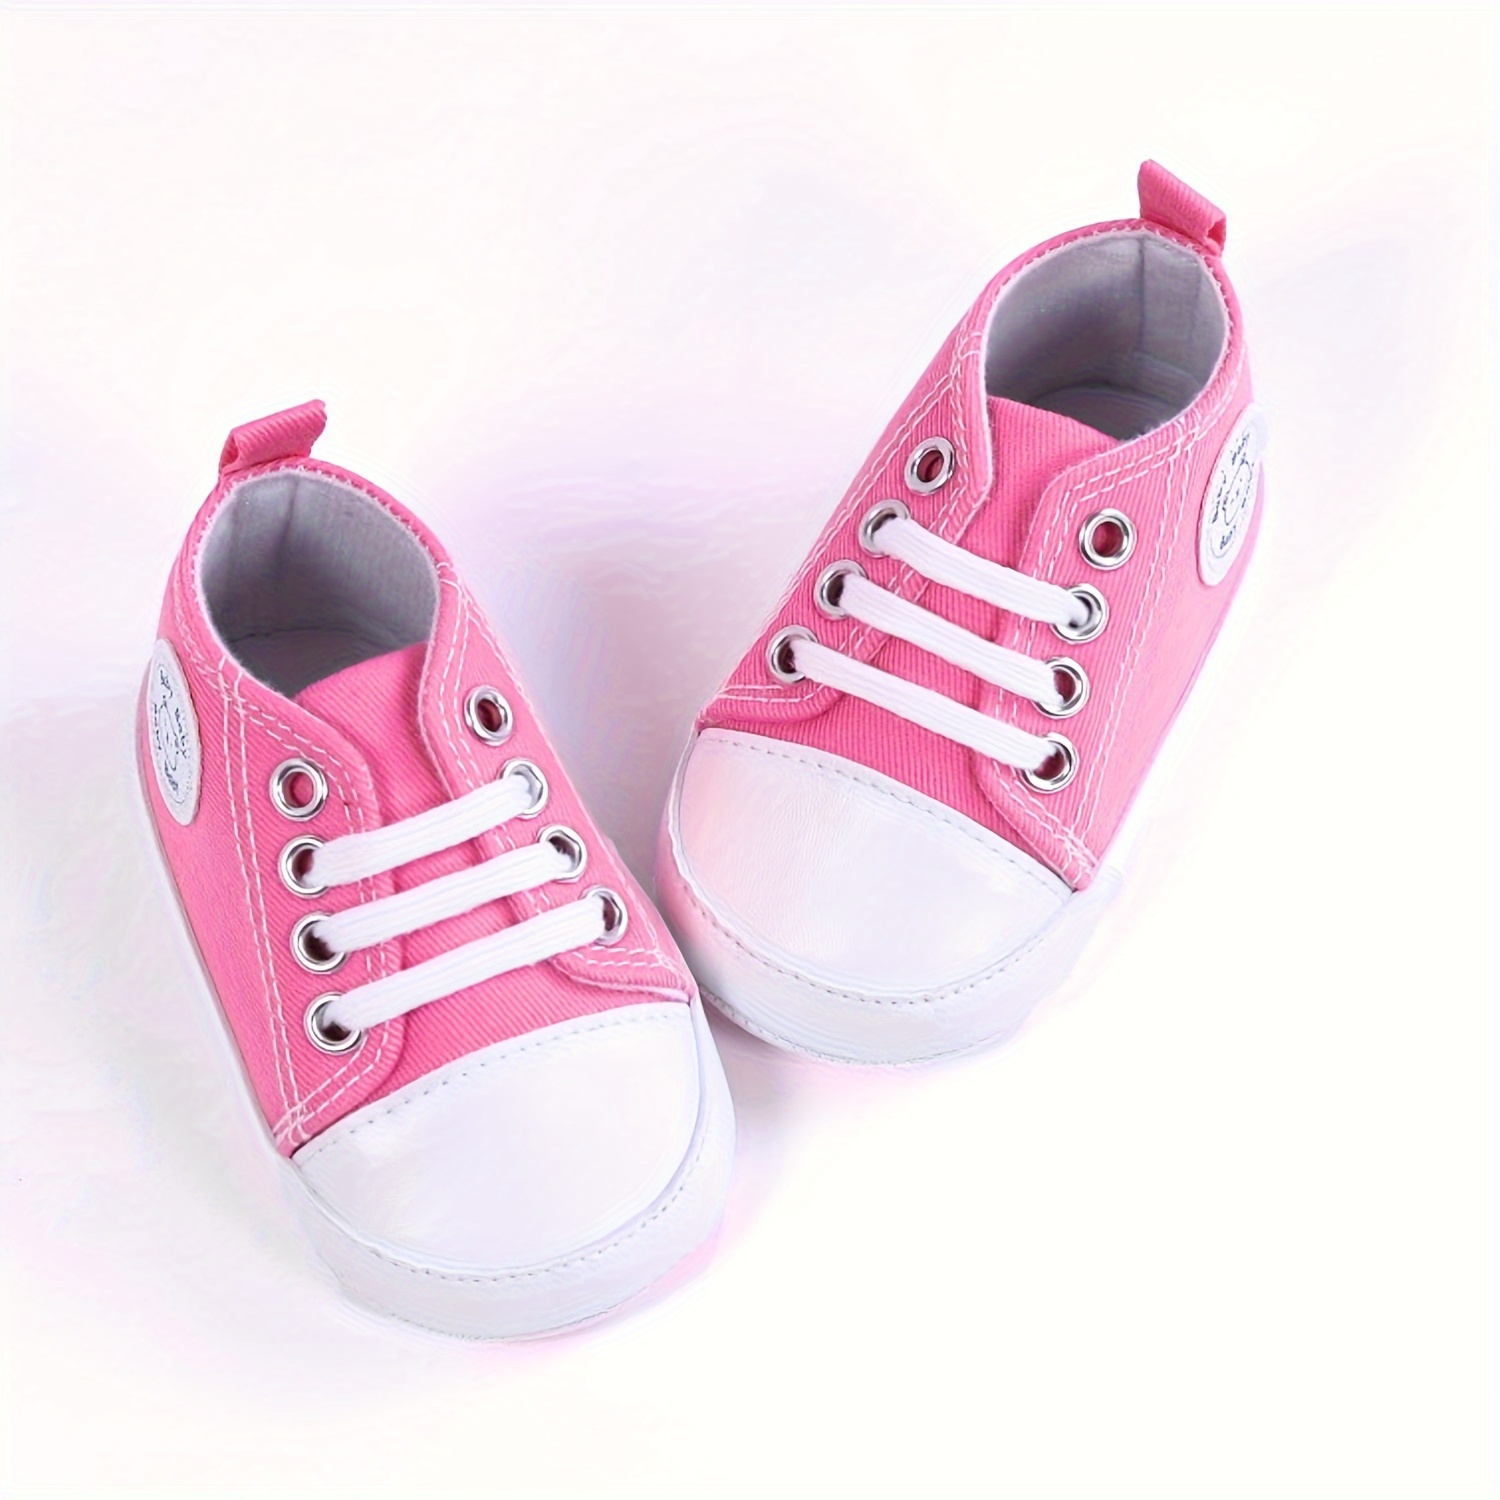 Redú! on Instagram: Las más hermosas zapatillas para bebé 💛 💫Talla 21-23  💫Acogedoras y cómodas 💫 Antideslizantes y duraderas . #zapatos #bebe #niña  #zapatillas